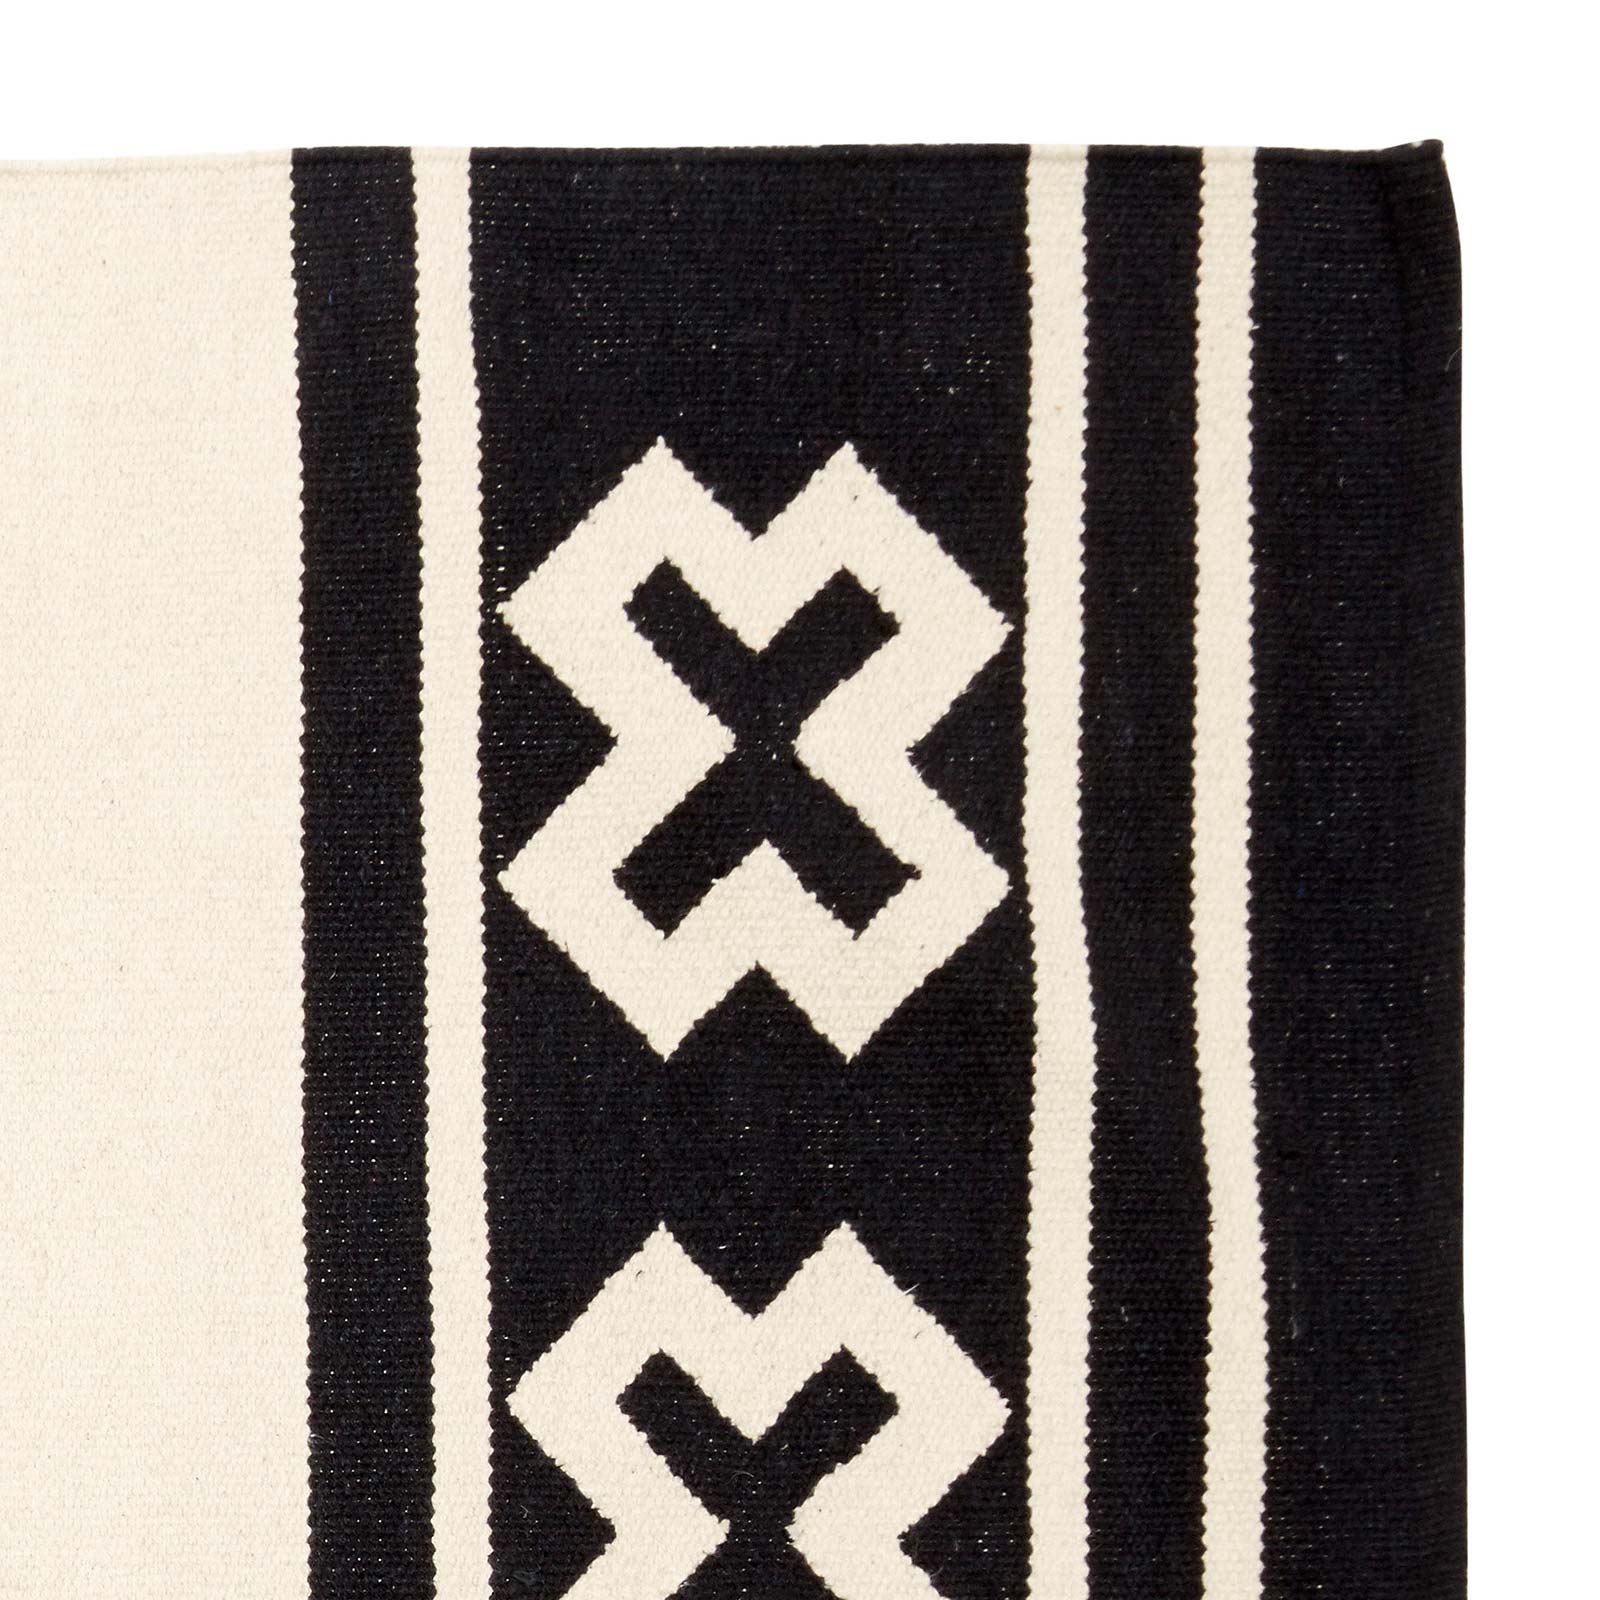 Sturen Geplooid dubbel Vloerkleed van wol zwart en off white met grafische print